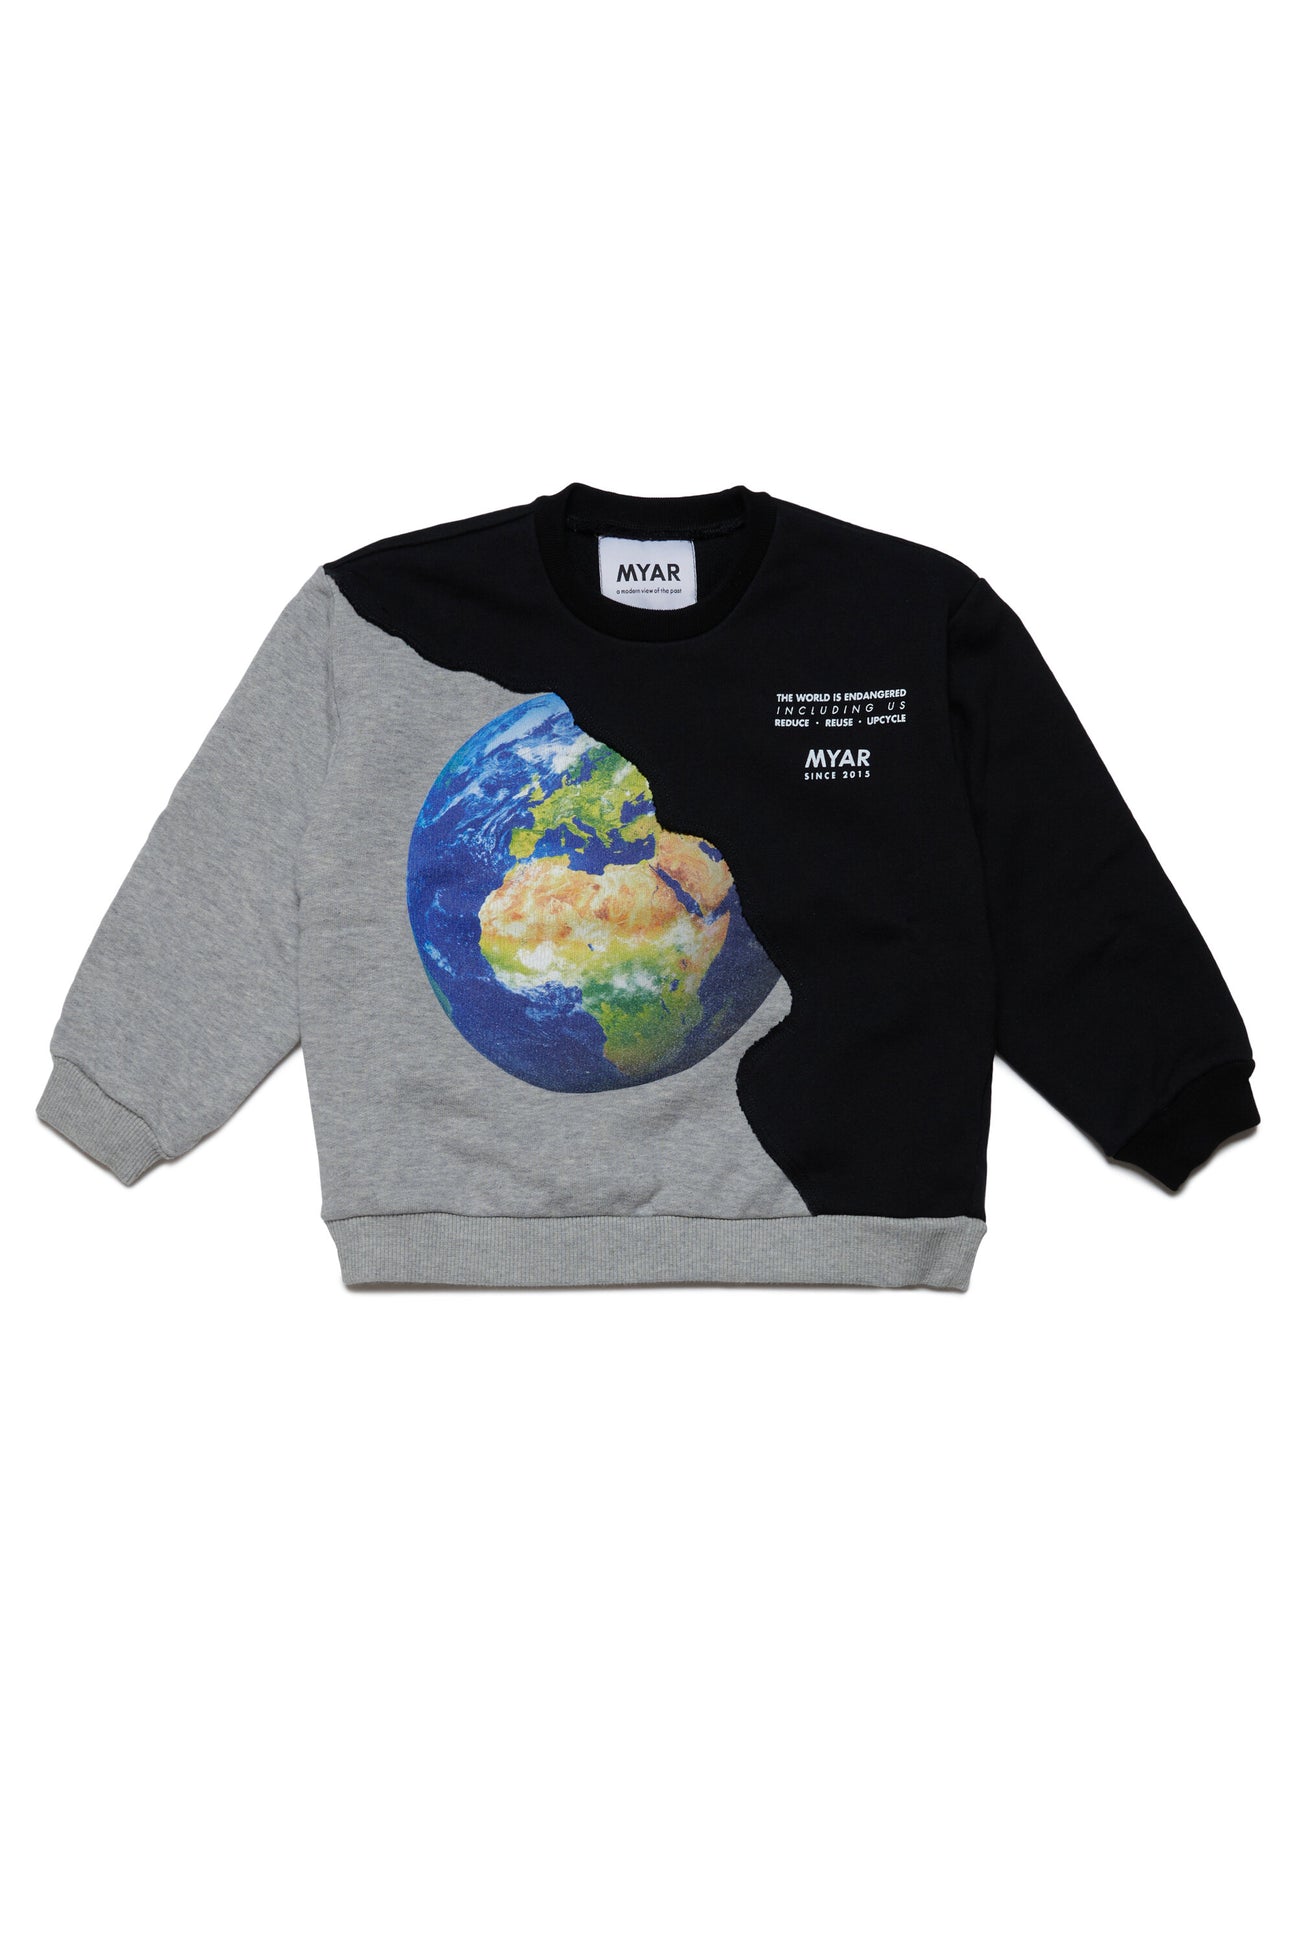 Crewneck sweatshirt with World Endangered print Crewneck sweatshirt with World Endangered print